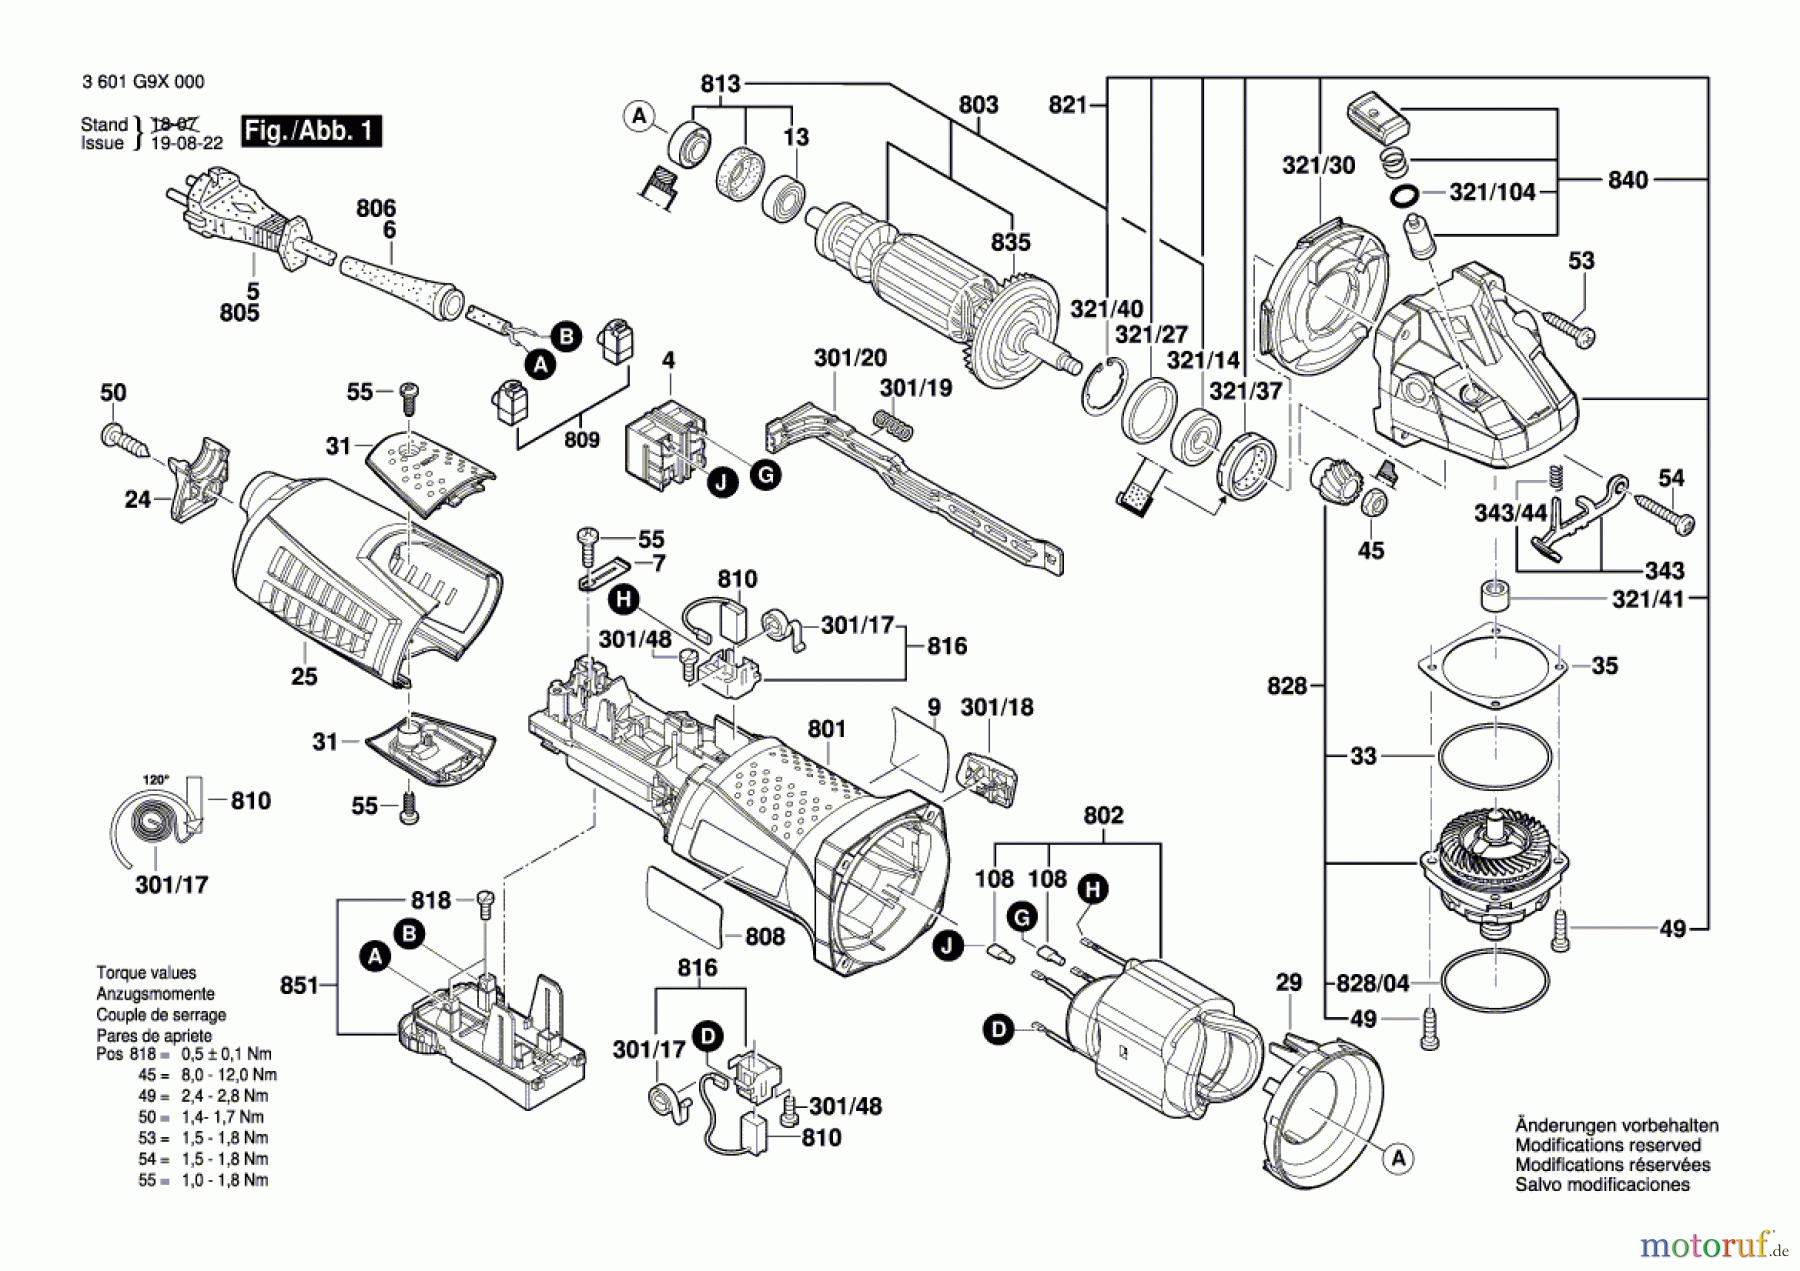  Bosch Werkzeug Winkelschleifer GWS 15-125 Inox Seite 1